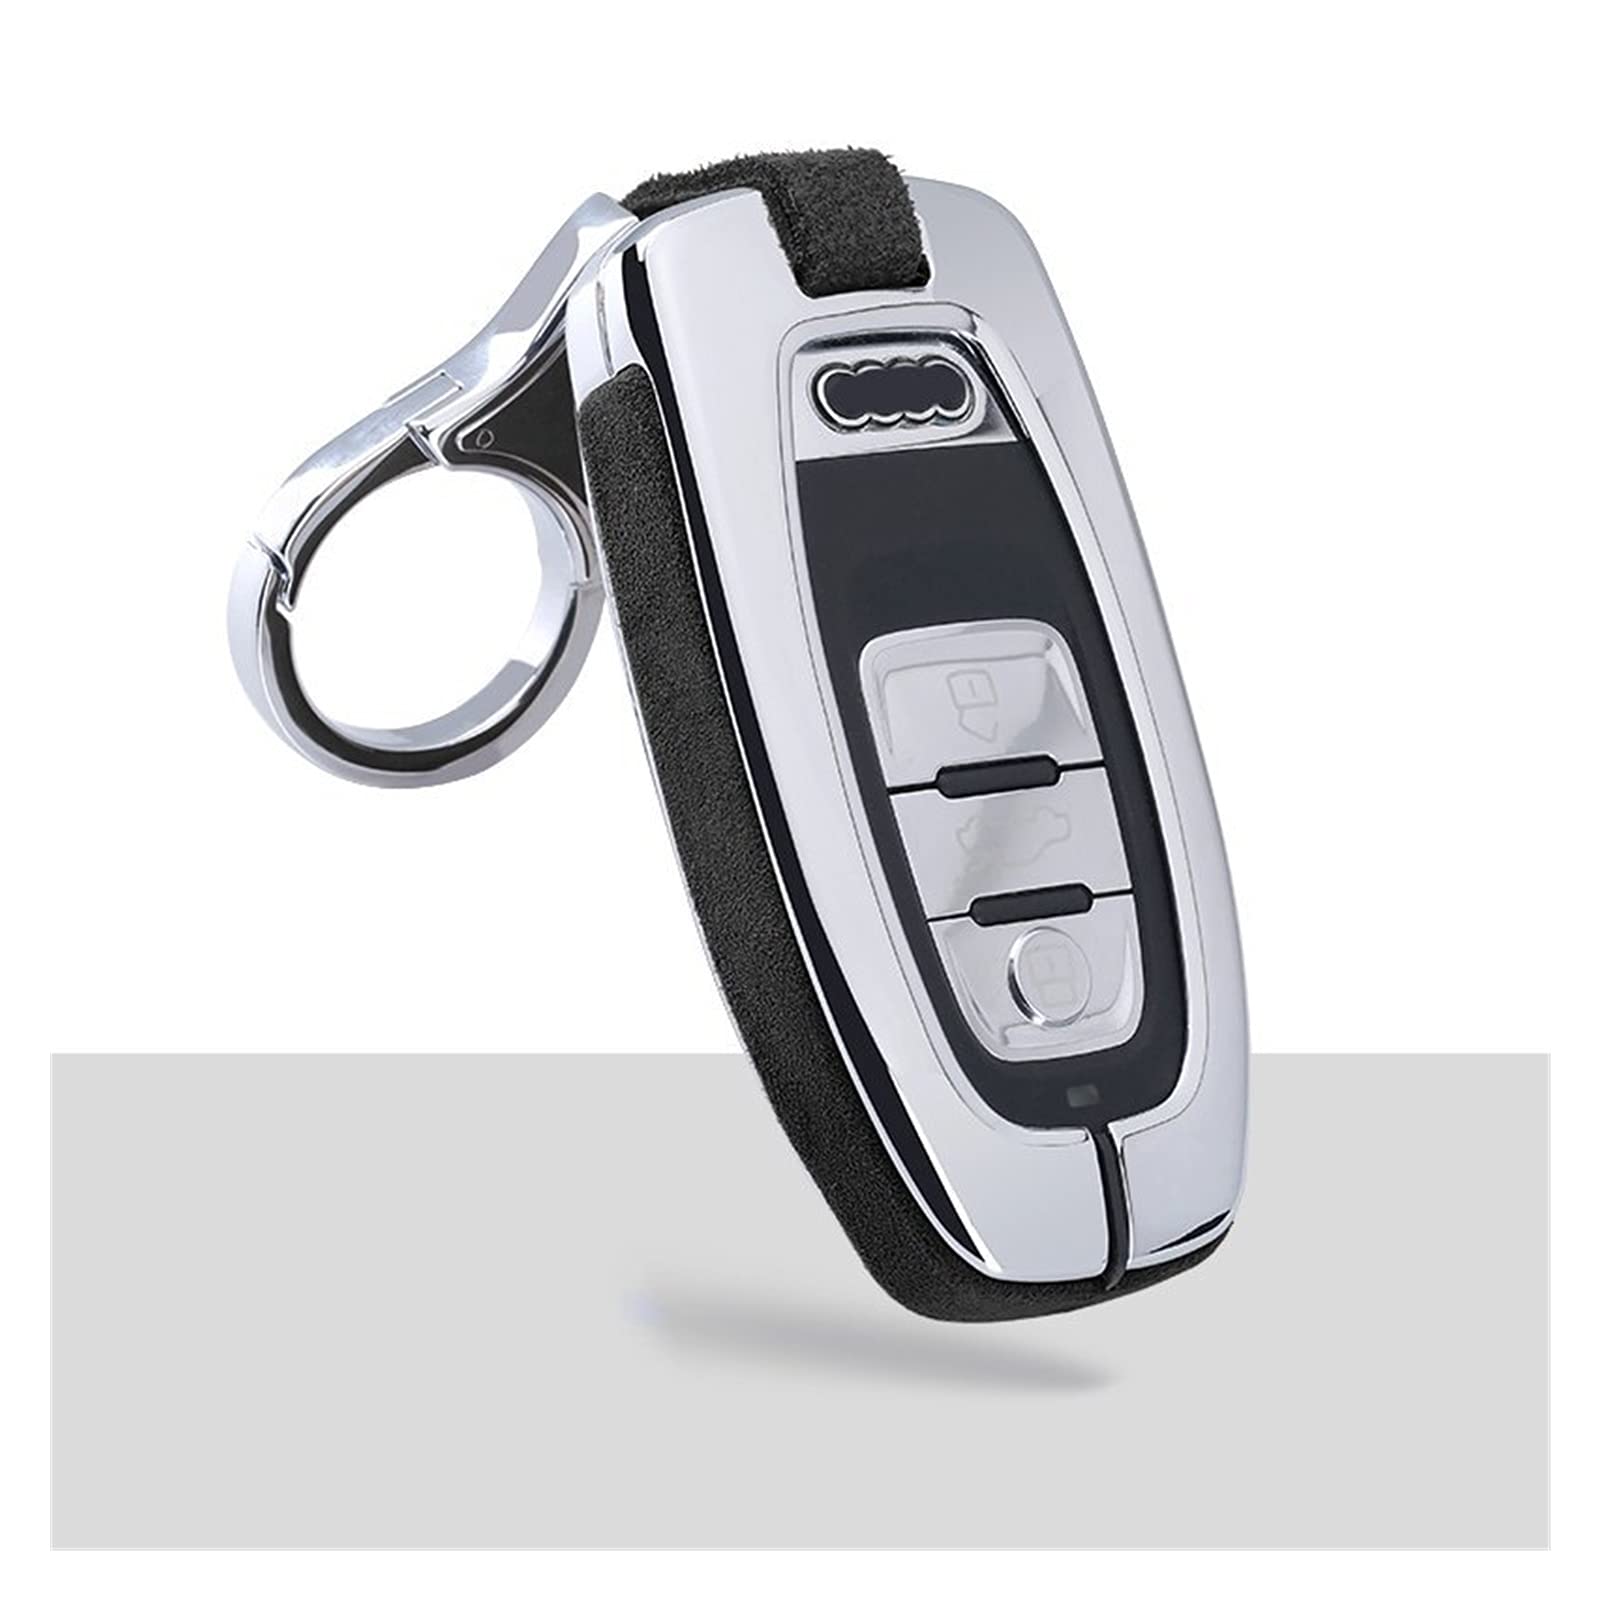 Autoschlüssel Schlüssel Hülle Schlüsselanhänger Tragbare Kfz-Key-Hülle-Taschen-Legierung Und Leder Mit Keychain Für Audi A4 A5 A6 A7 Q5 Q2 Schlüssel Hülle (Farbe : Schwarz)